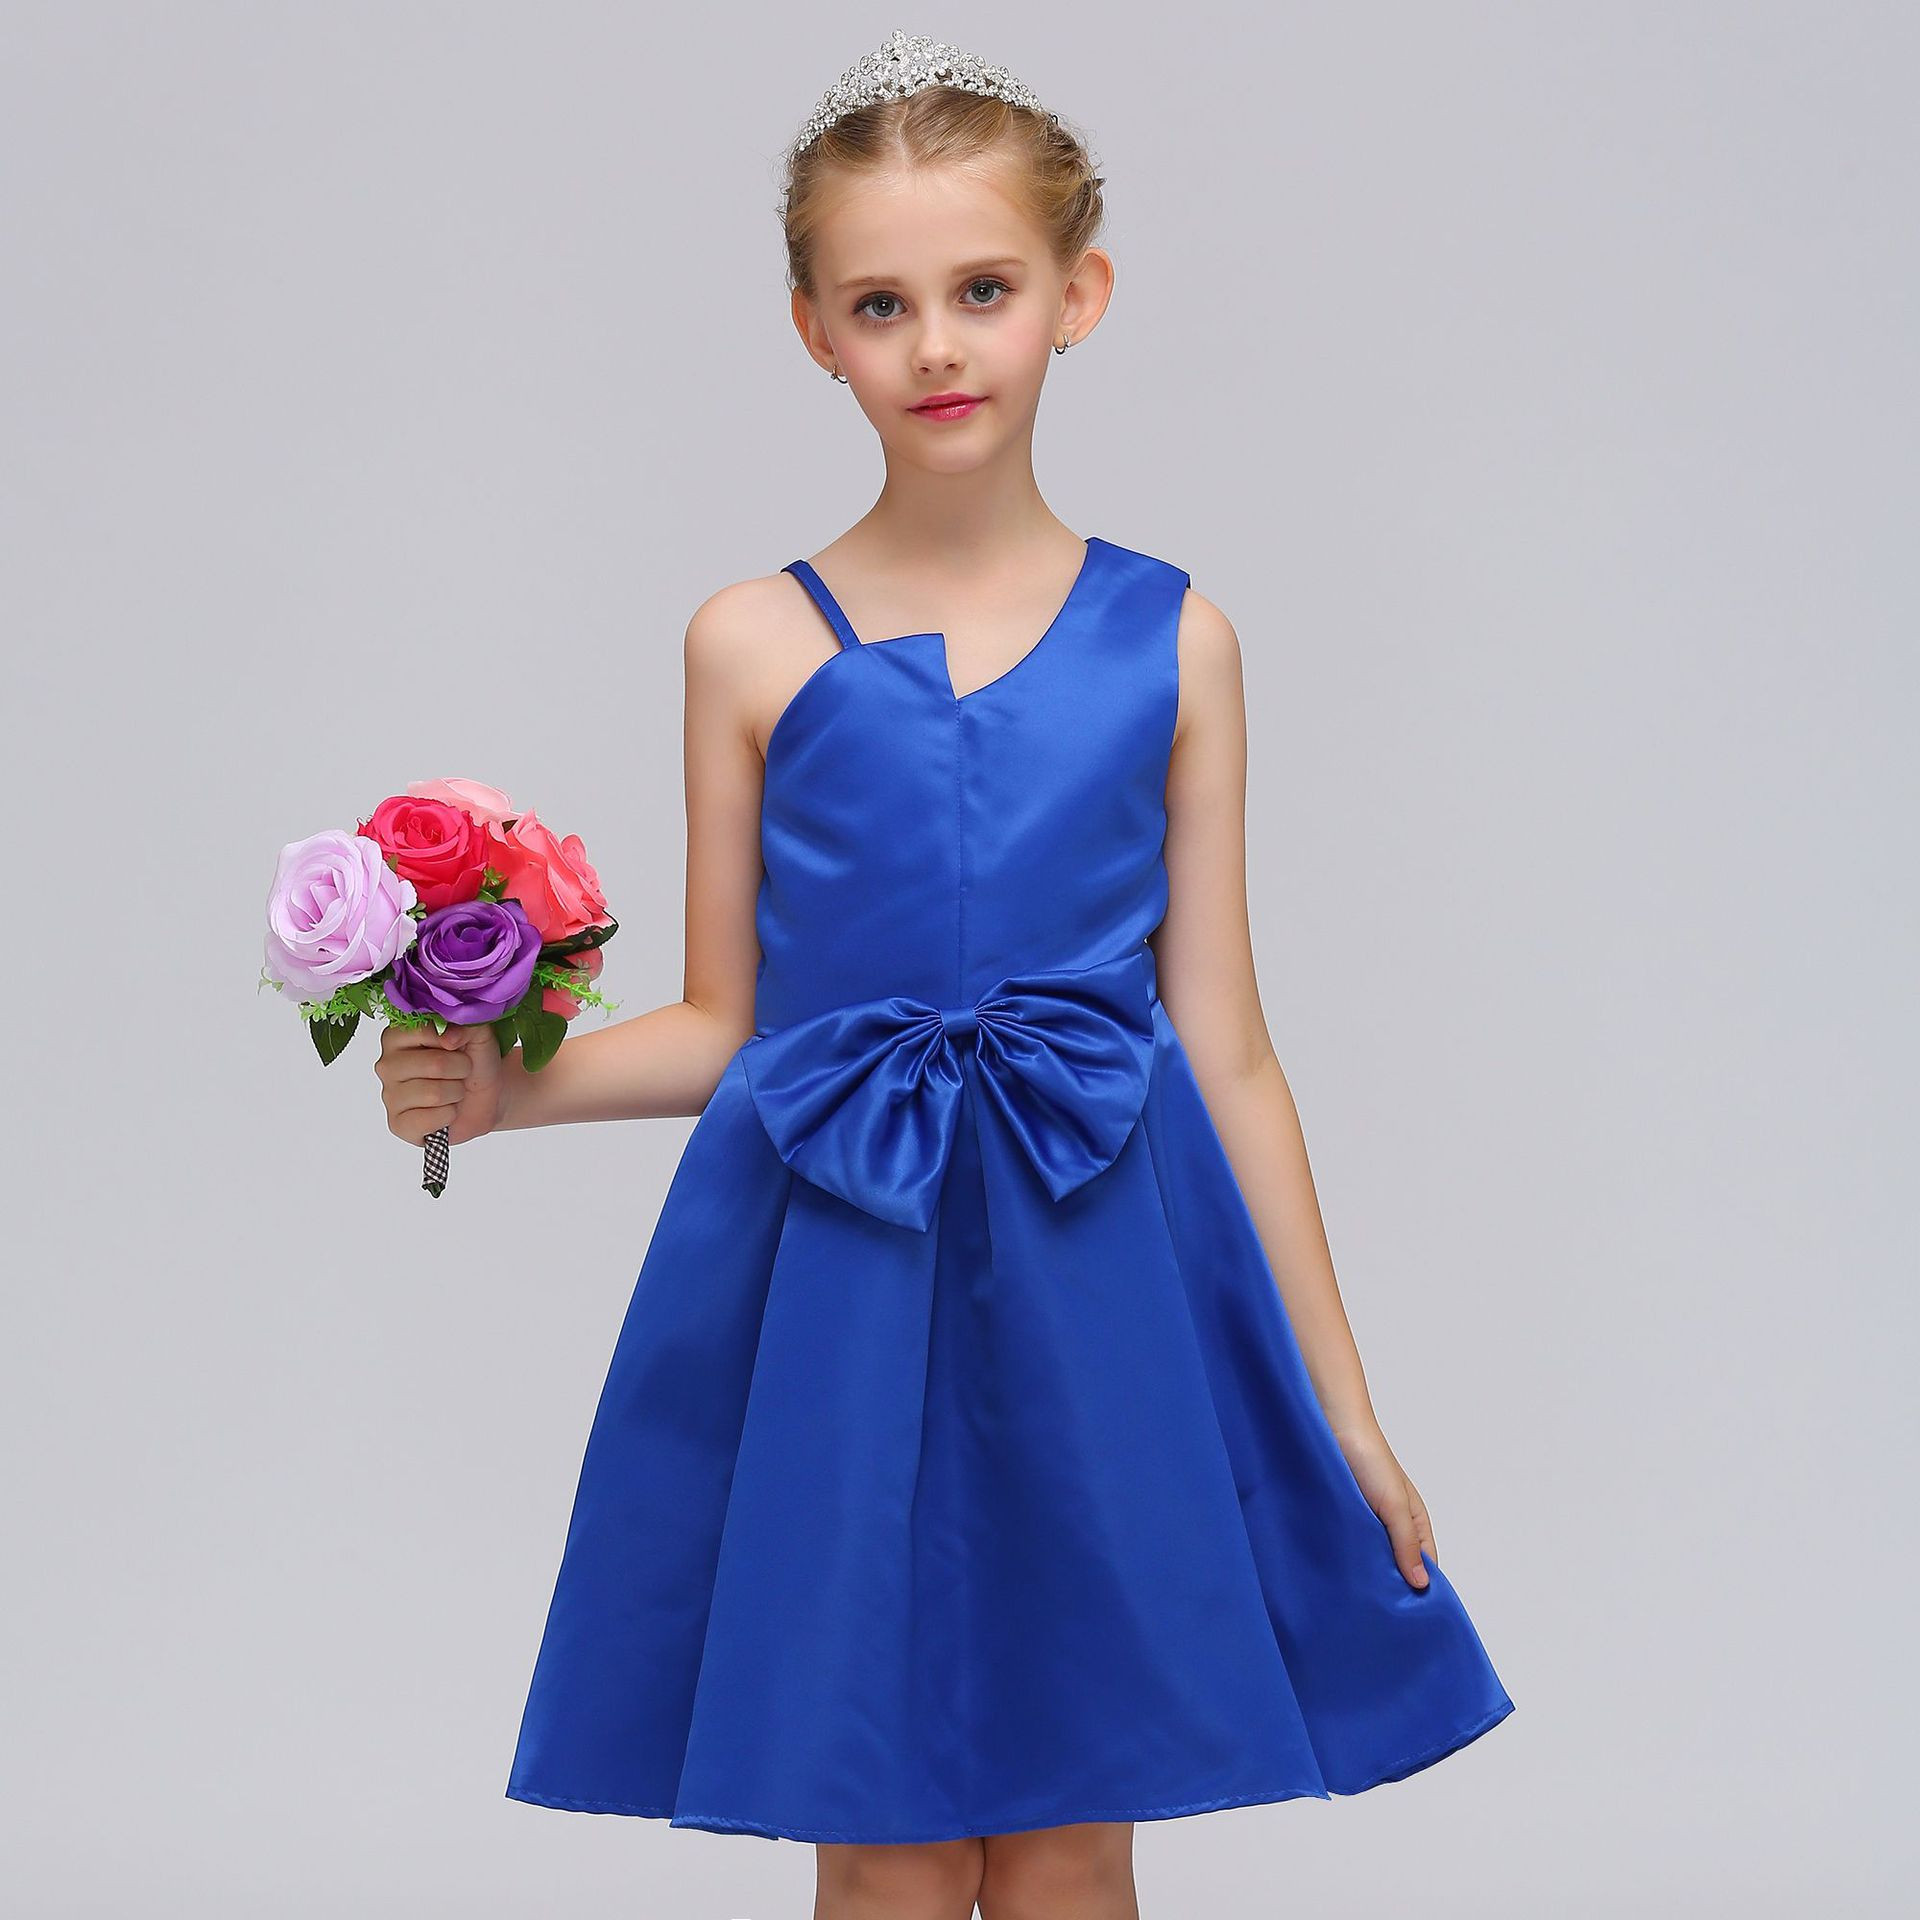 Child Party Dress
 Hot Sale 2018 Summer Kids Girls Princess Dress Sleeveless